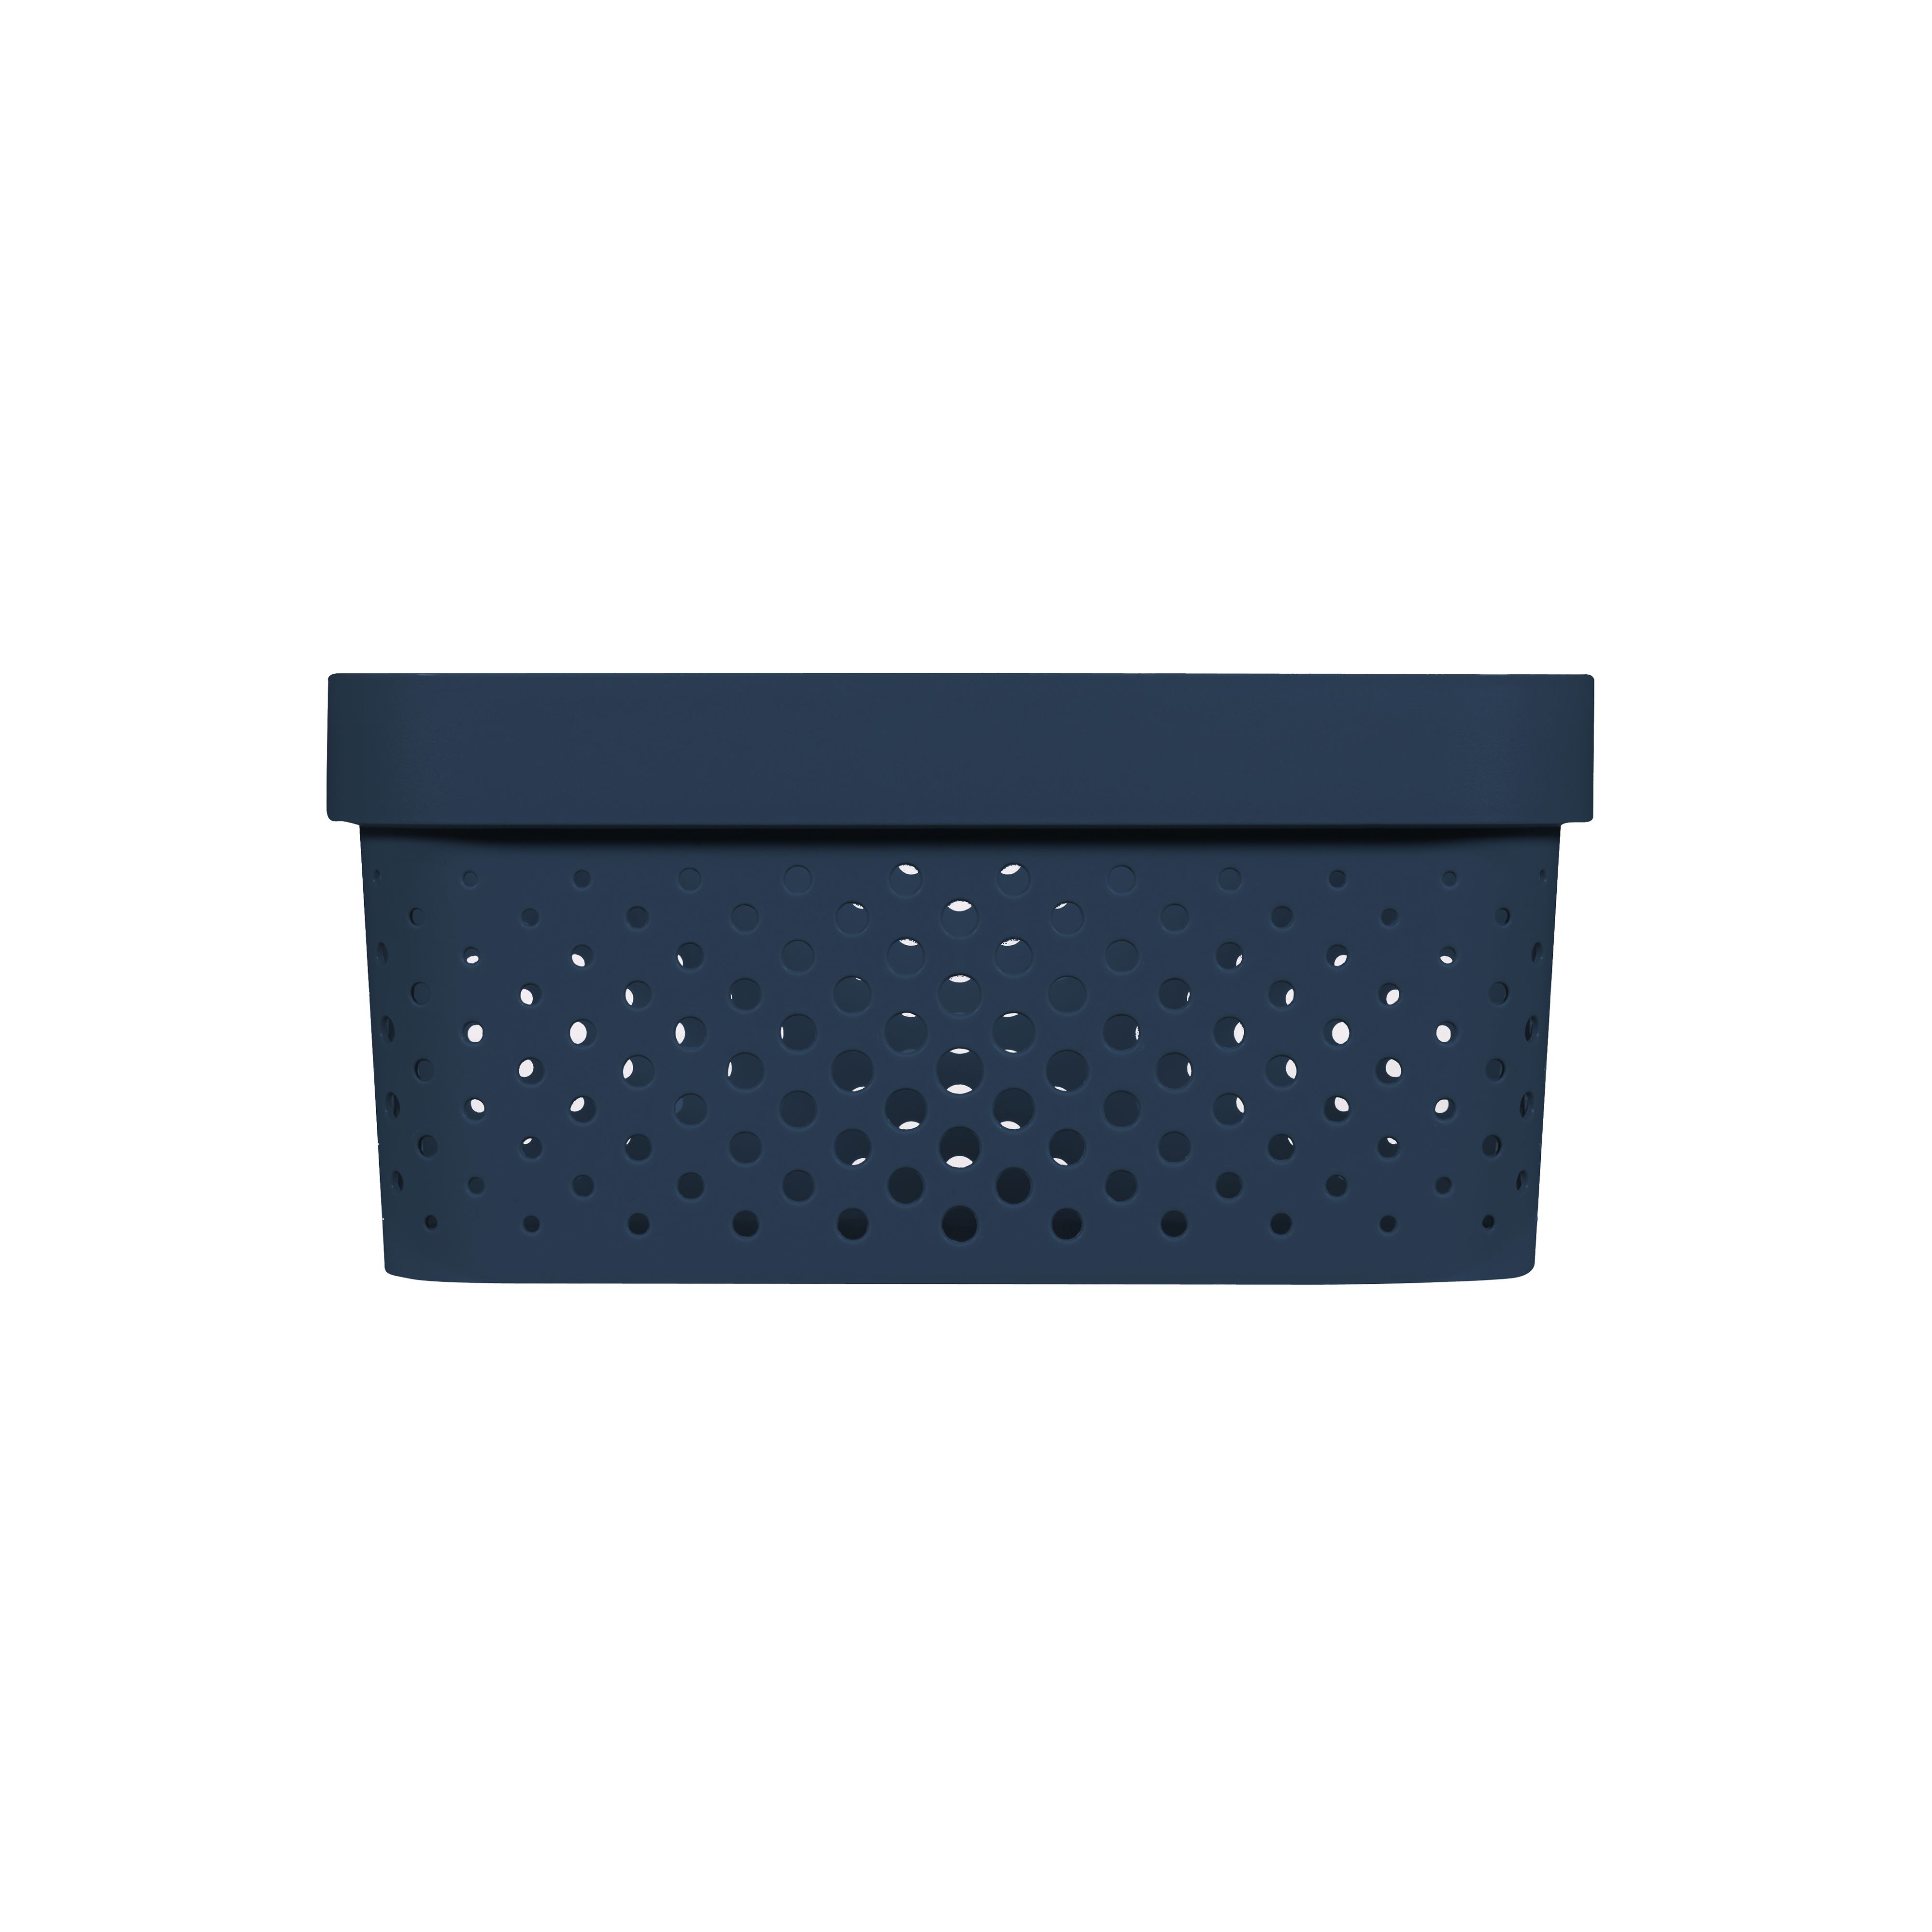 Curver Infinity Dots Blue Plastic Stackable Storage basket (H)12cm (W)26cm (D)18cm